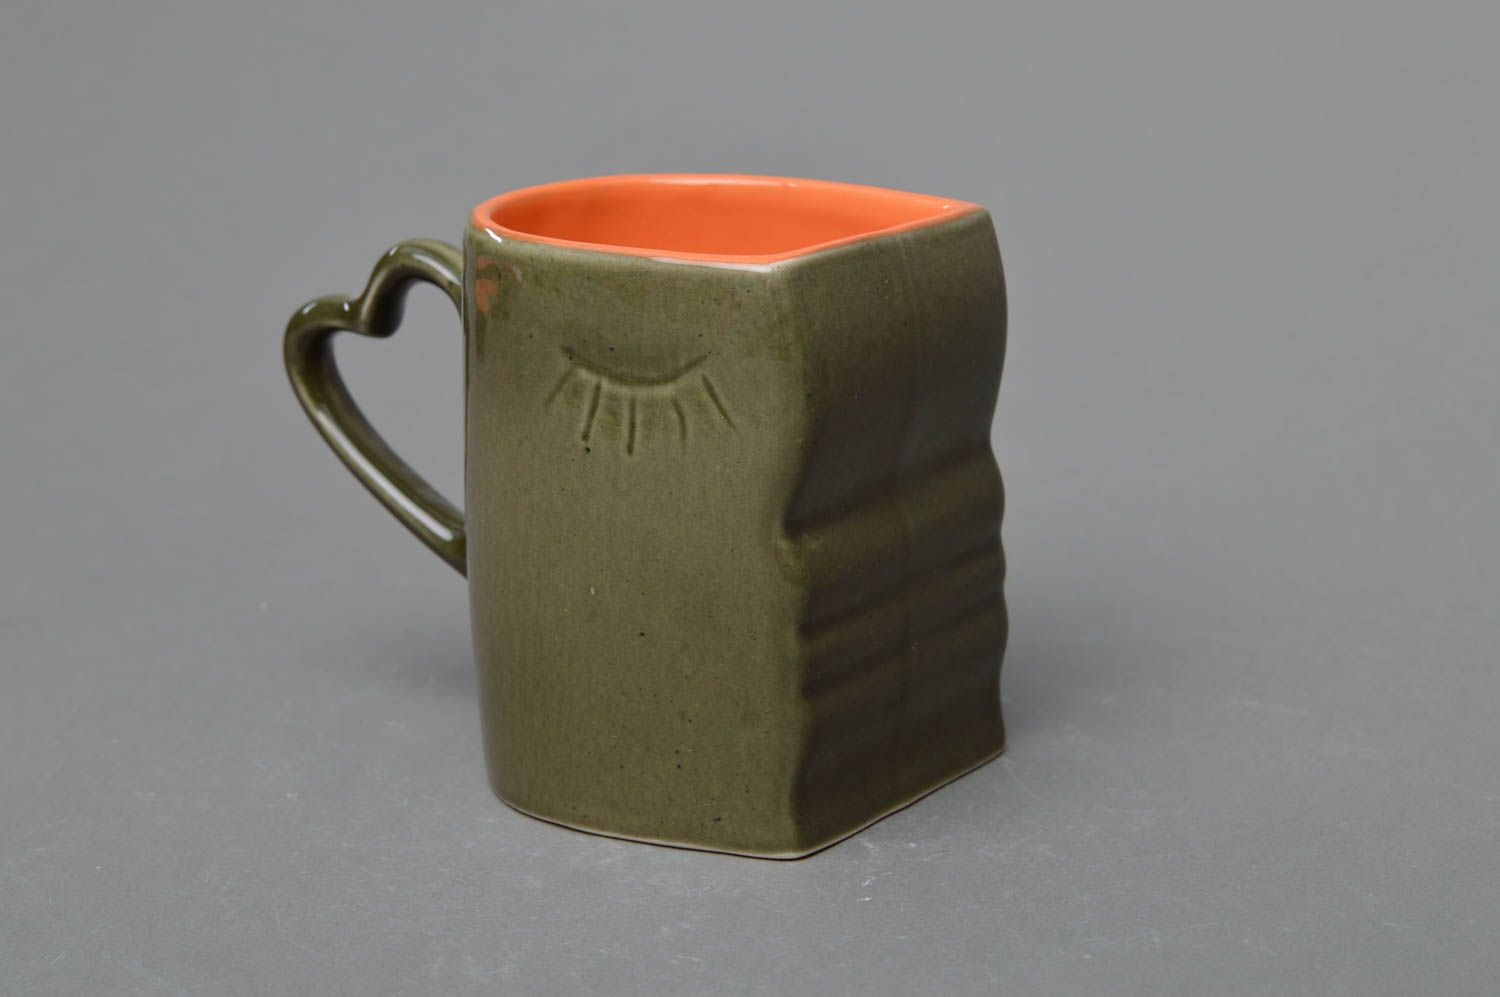 Зеленая с оранжевым чашка из фарфора ручной работы расписанная глазурью фото 1